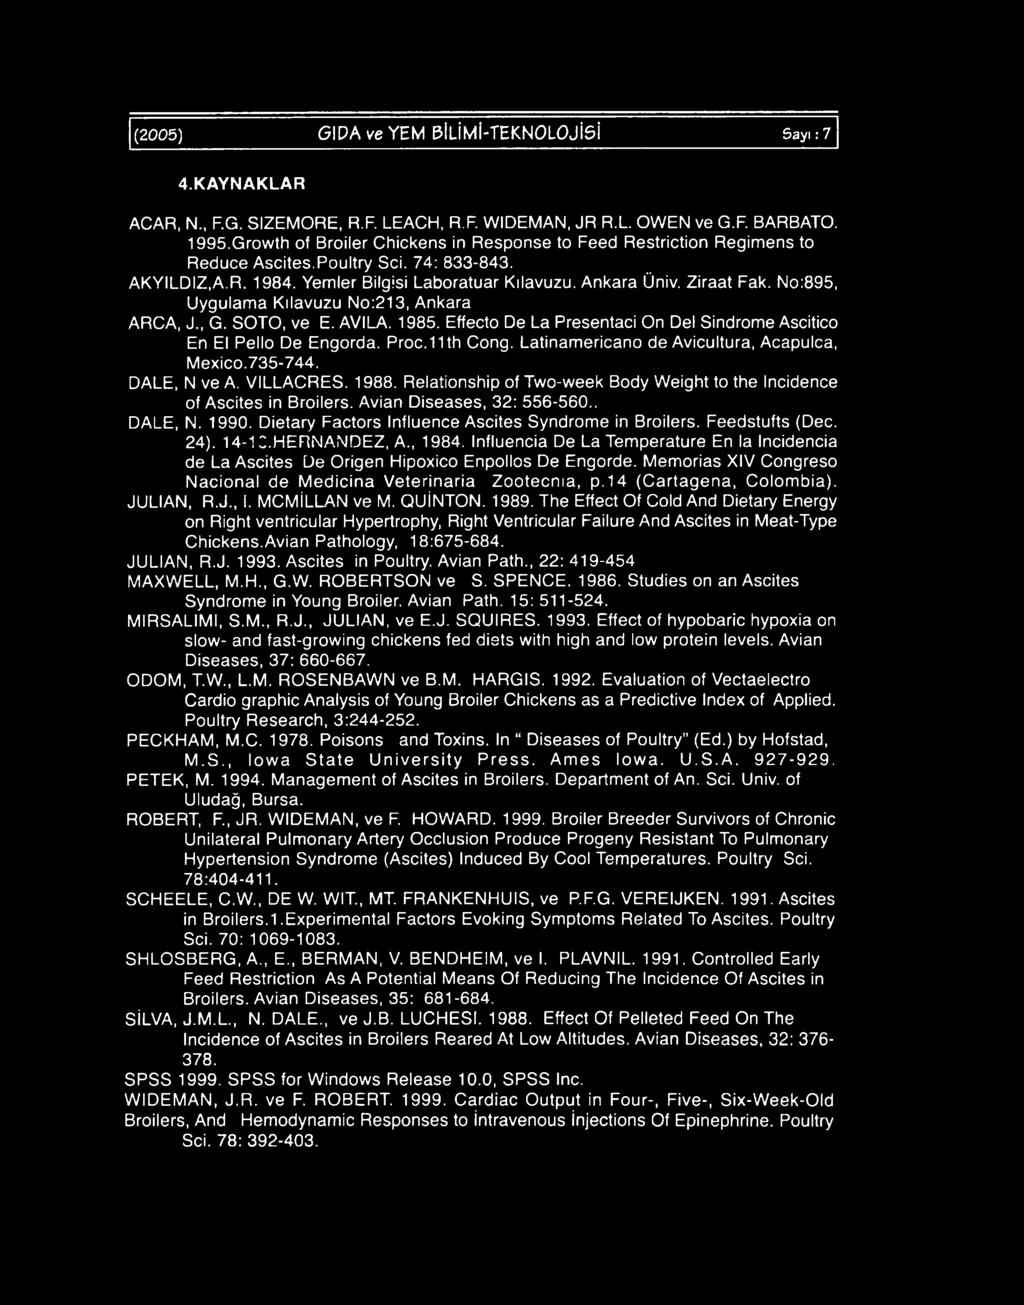 No:895, Uygulama Kılavuzu No:213, Ankara ARCA, JMG. SOTO, ve E. AVILA. 1985. Effecto De La Presentaci On Del Sindrome Ascitico En El Pello De Engorda. Proc.11th Cong.